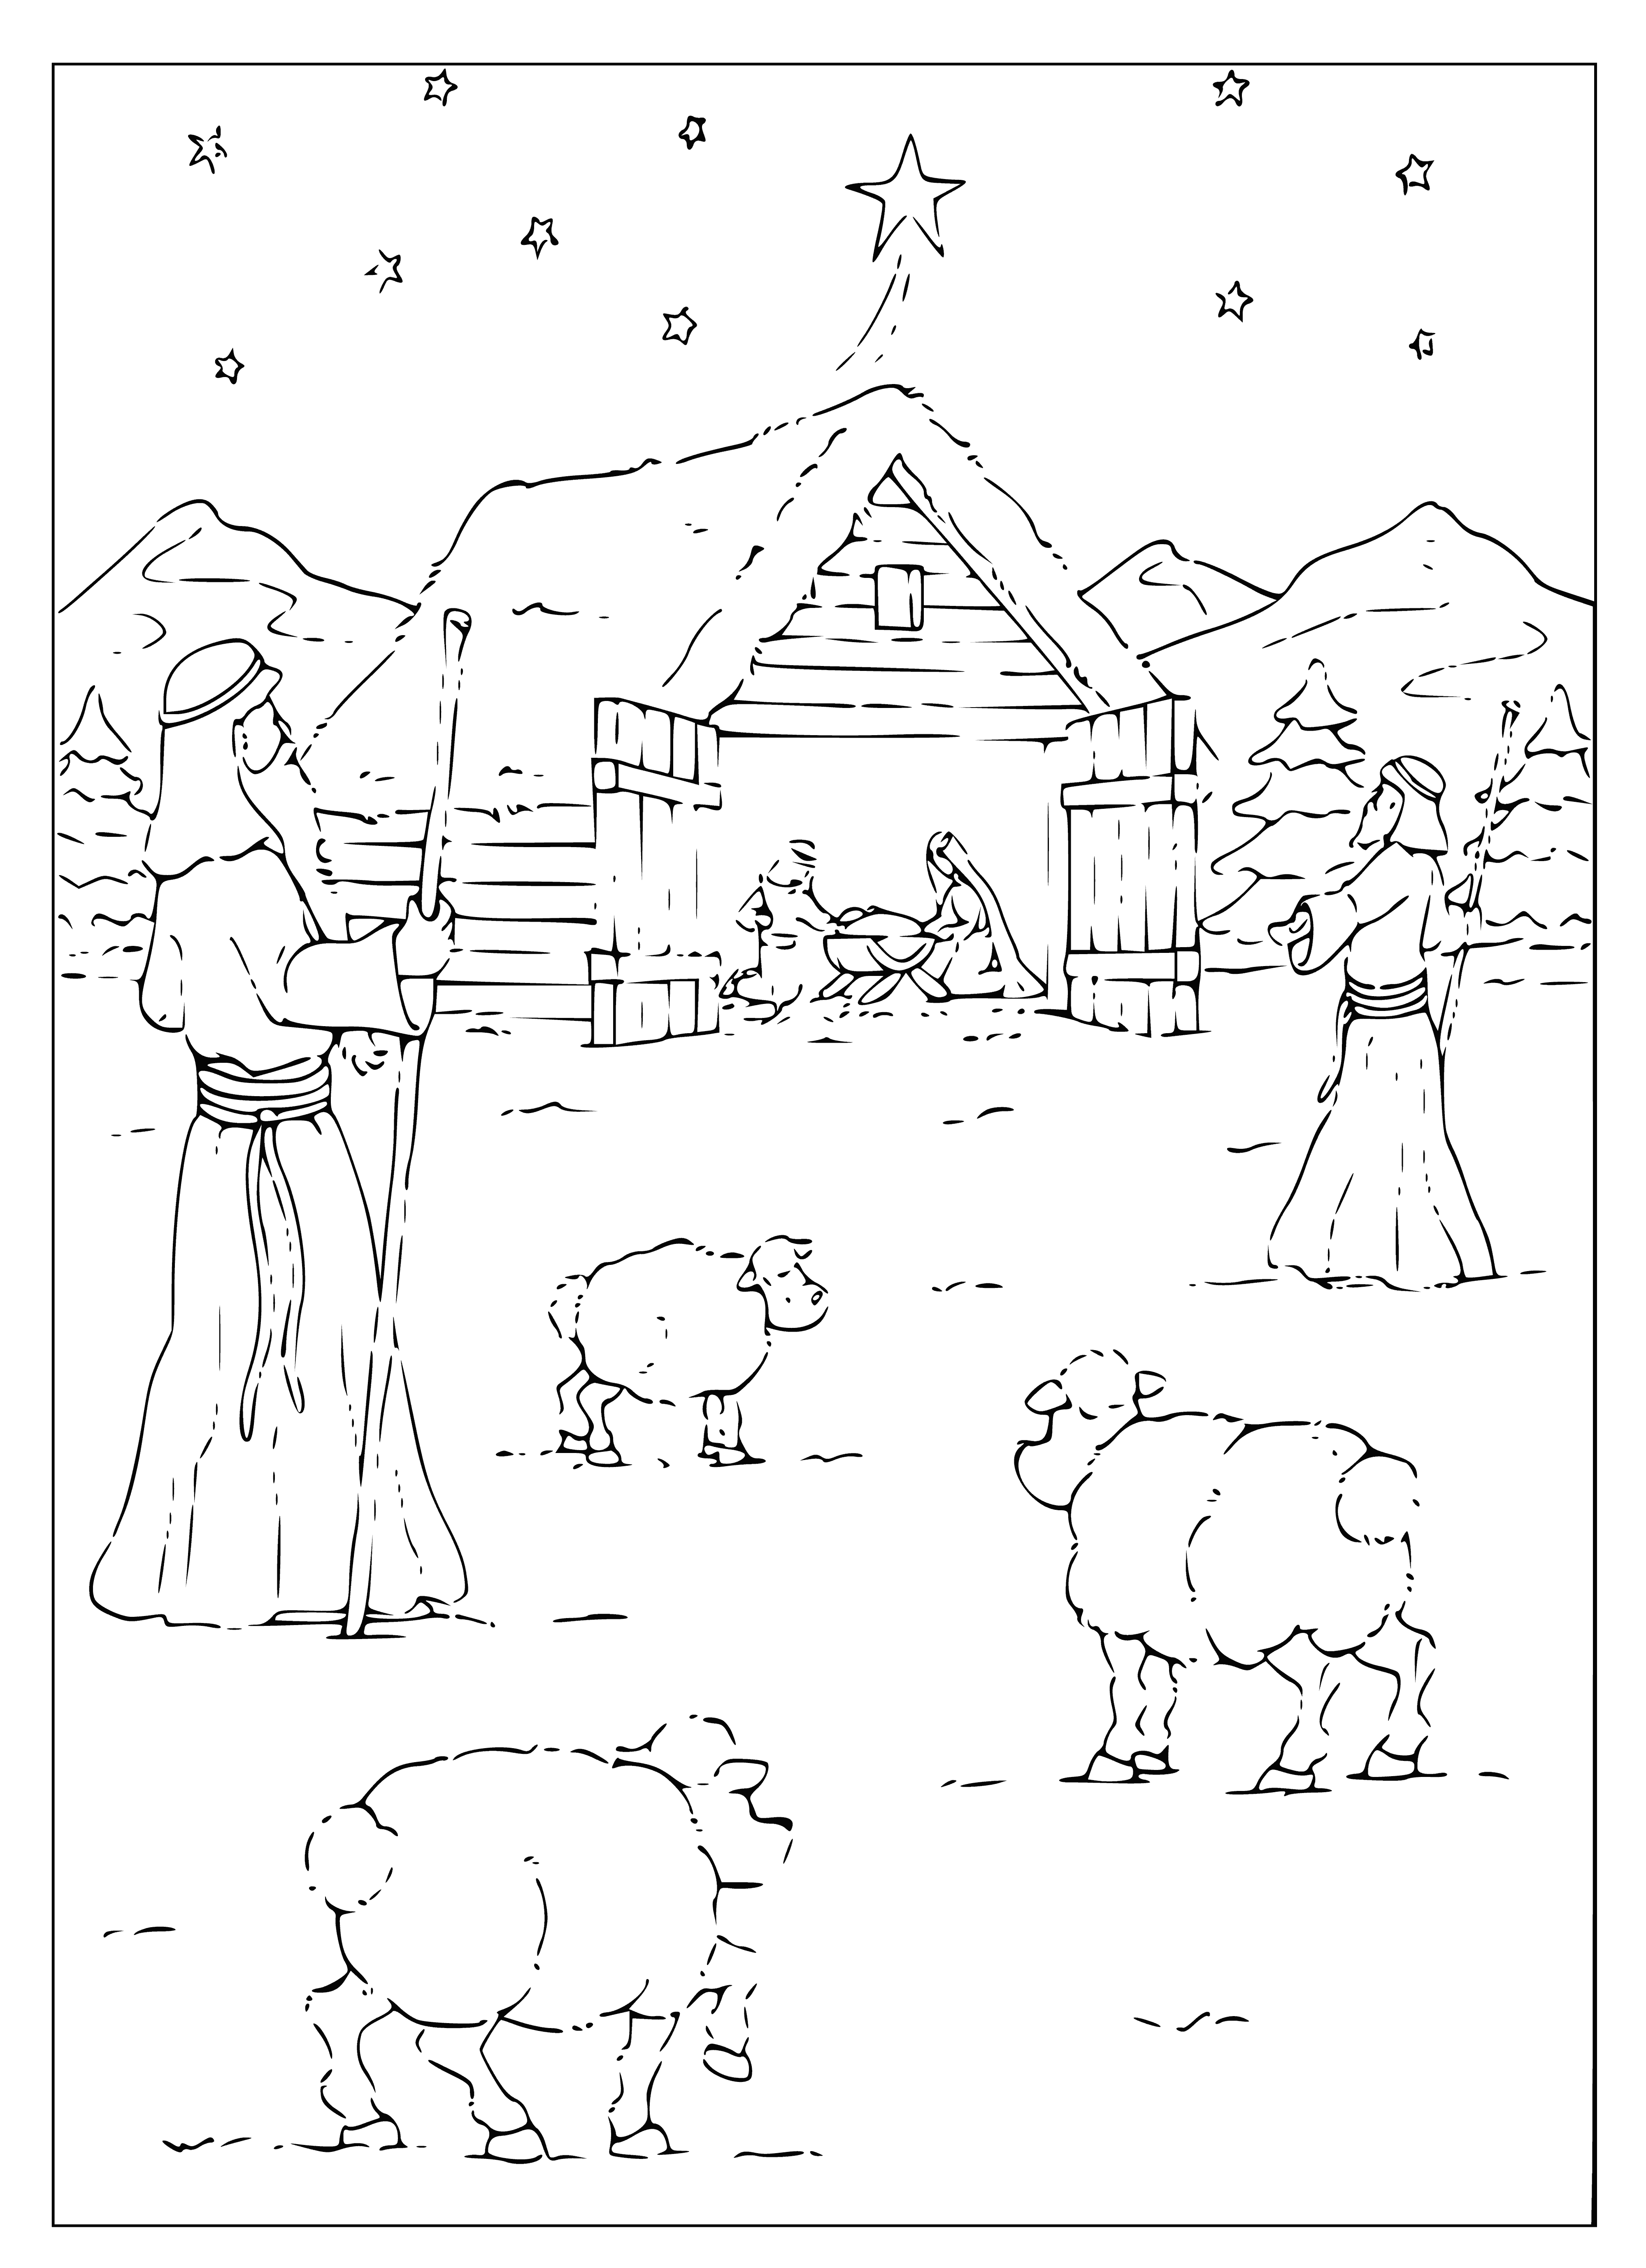 İsa Çobanları boyama sayfası